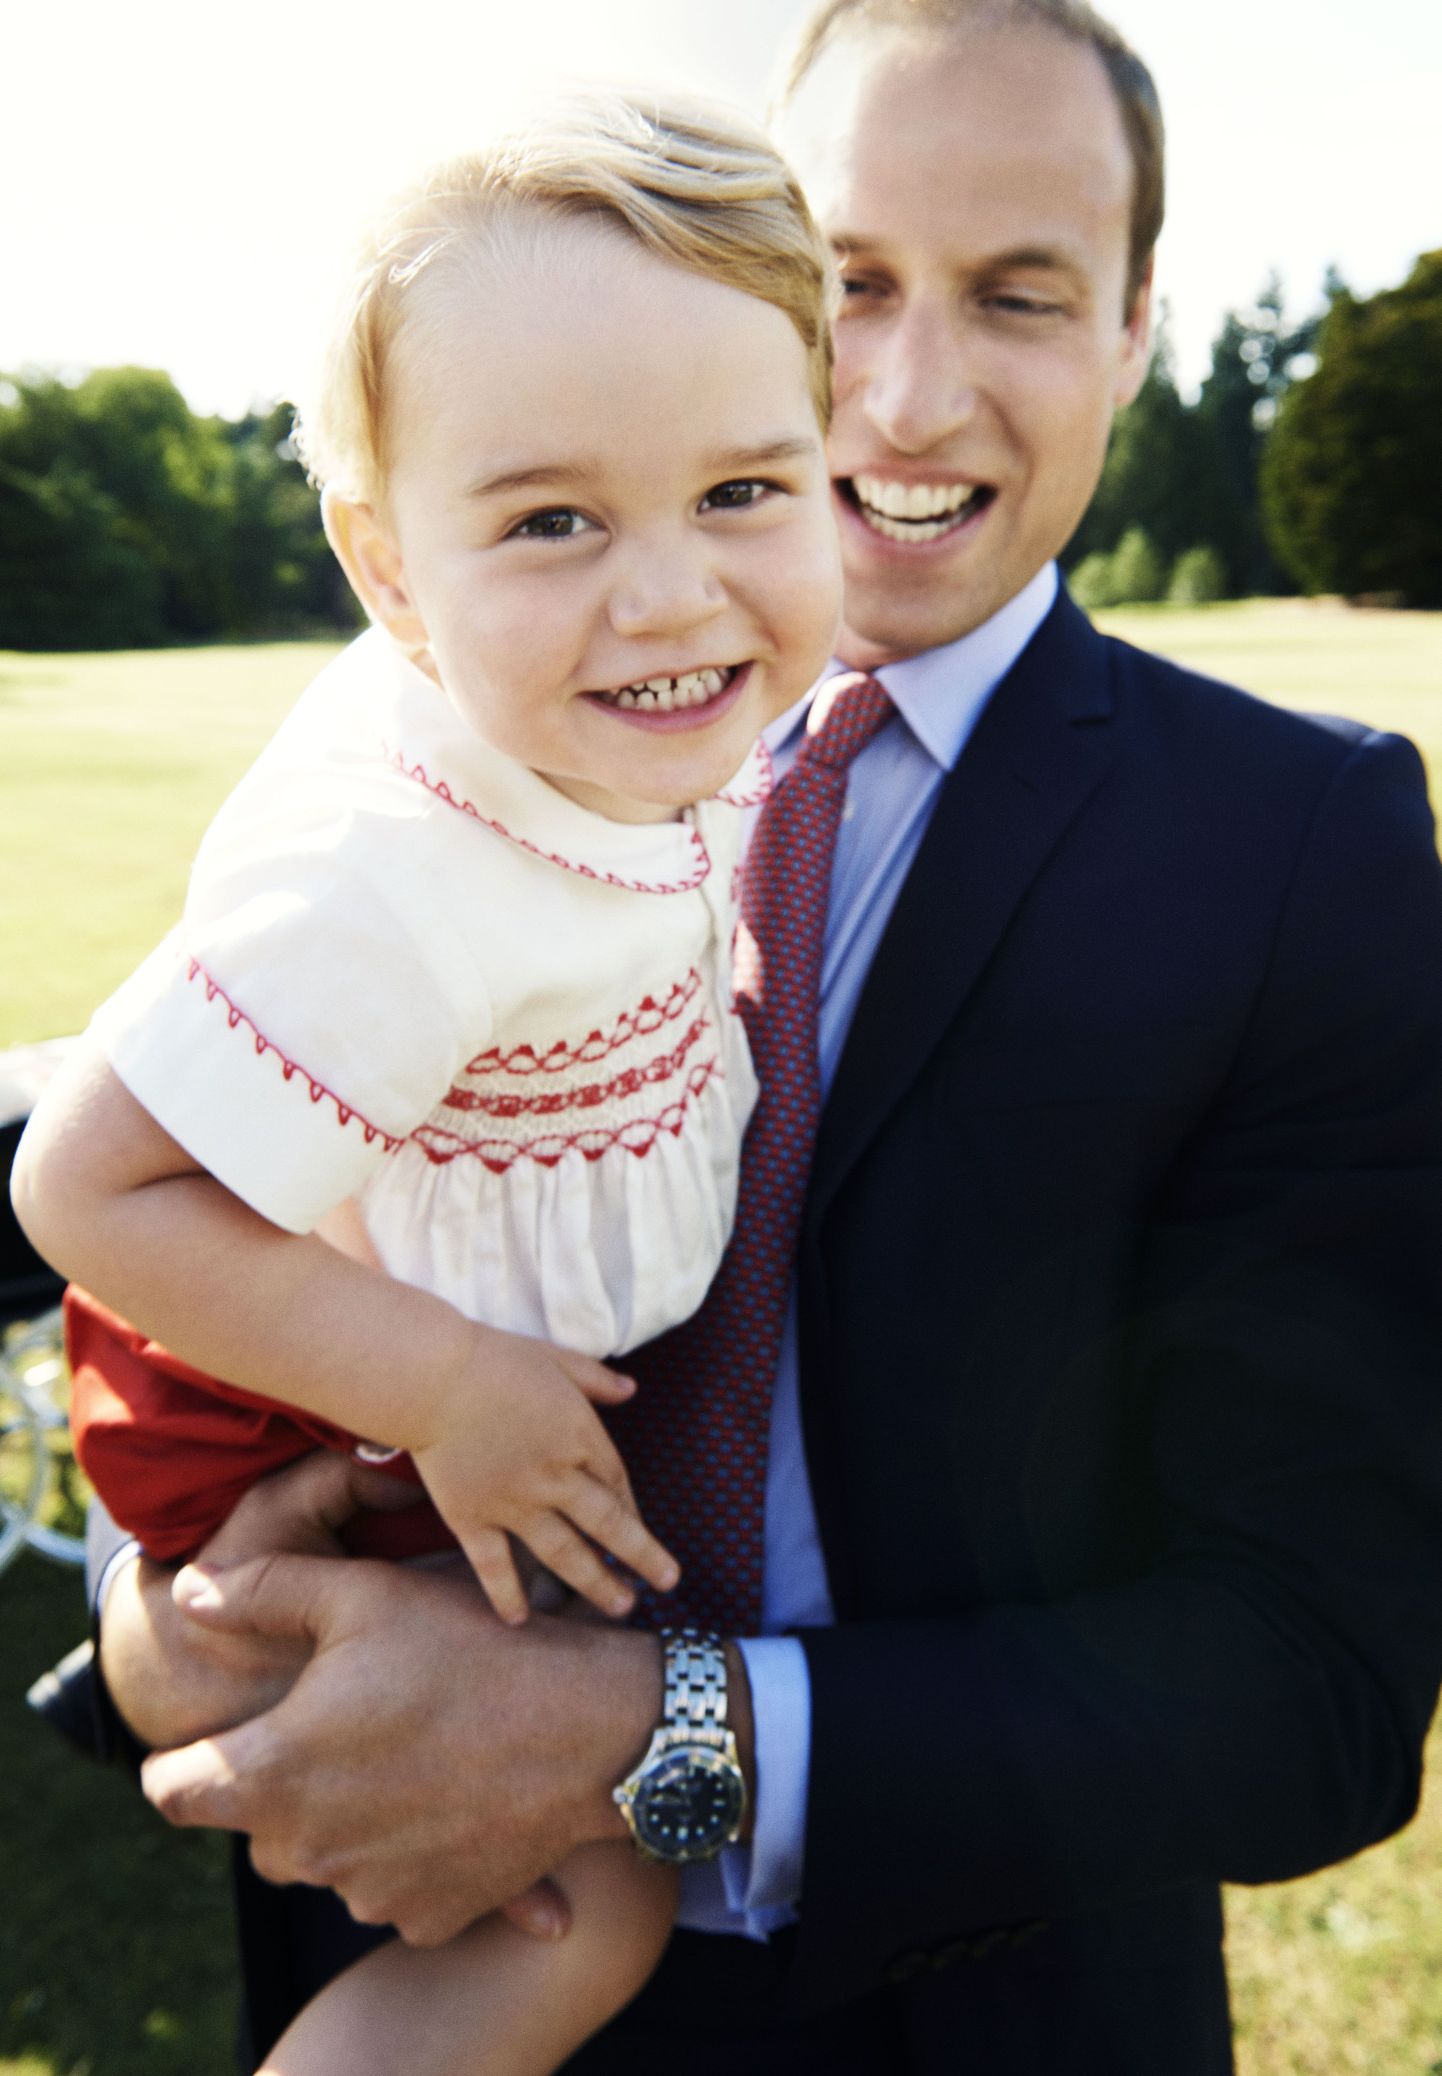 Prints George ja ta isa, prints William